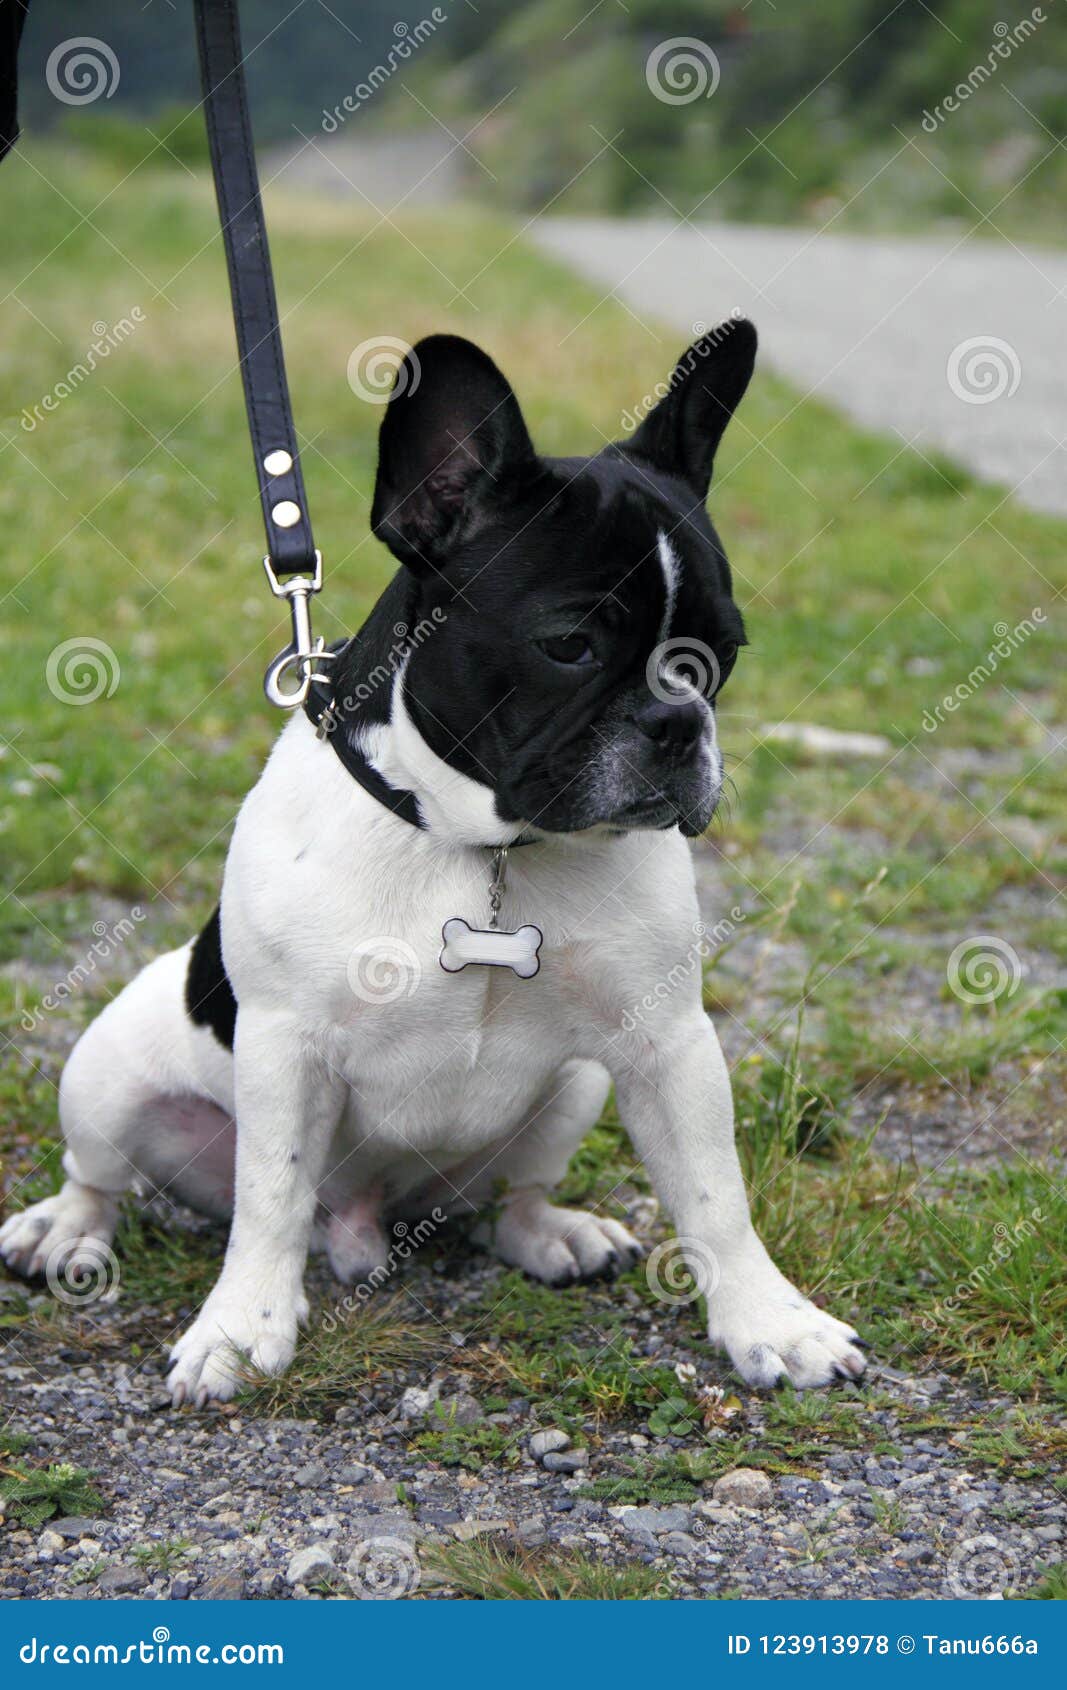 french bulldog leash